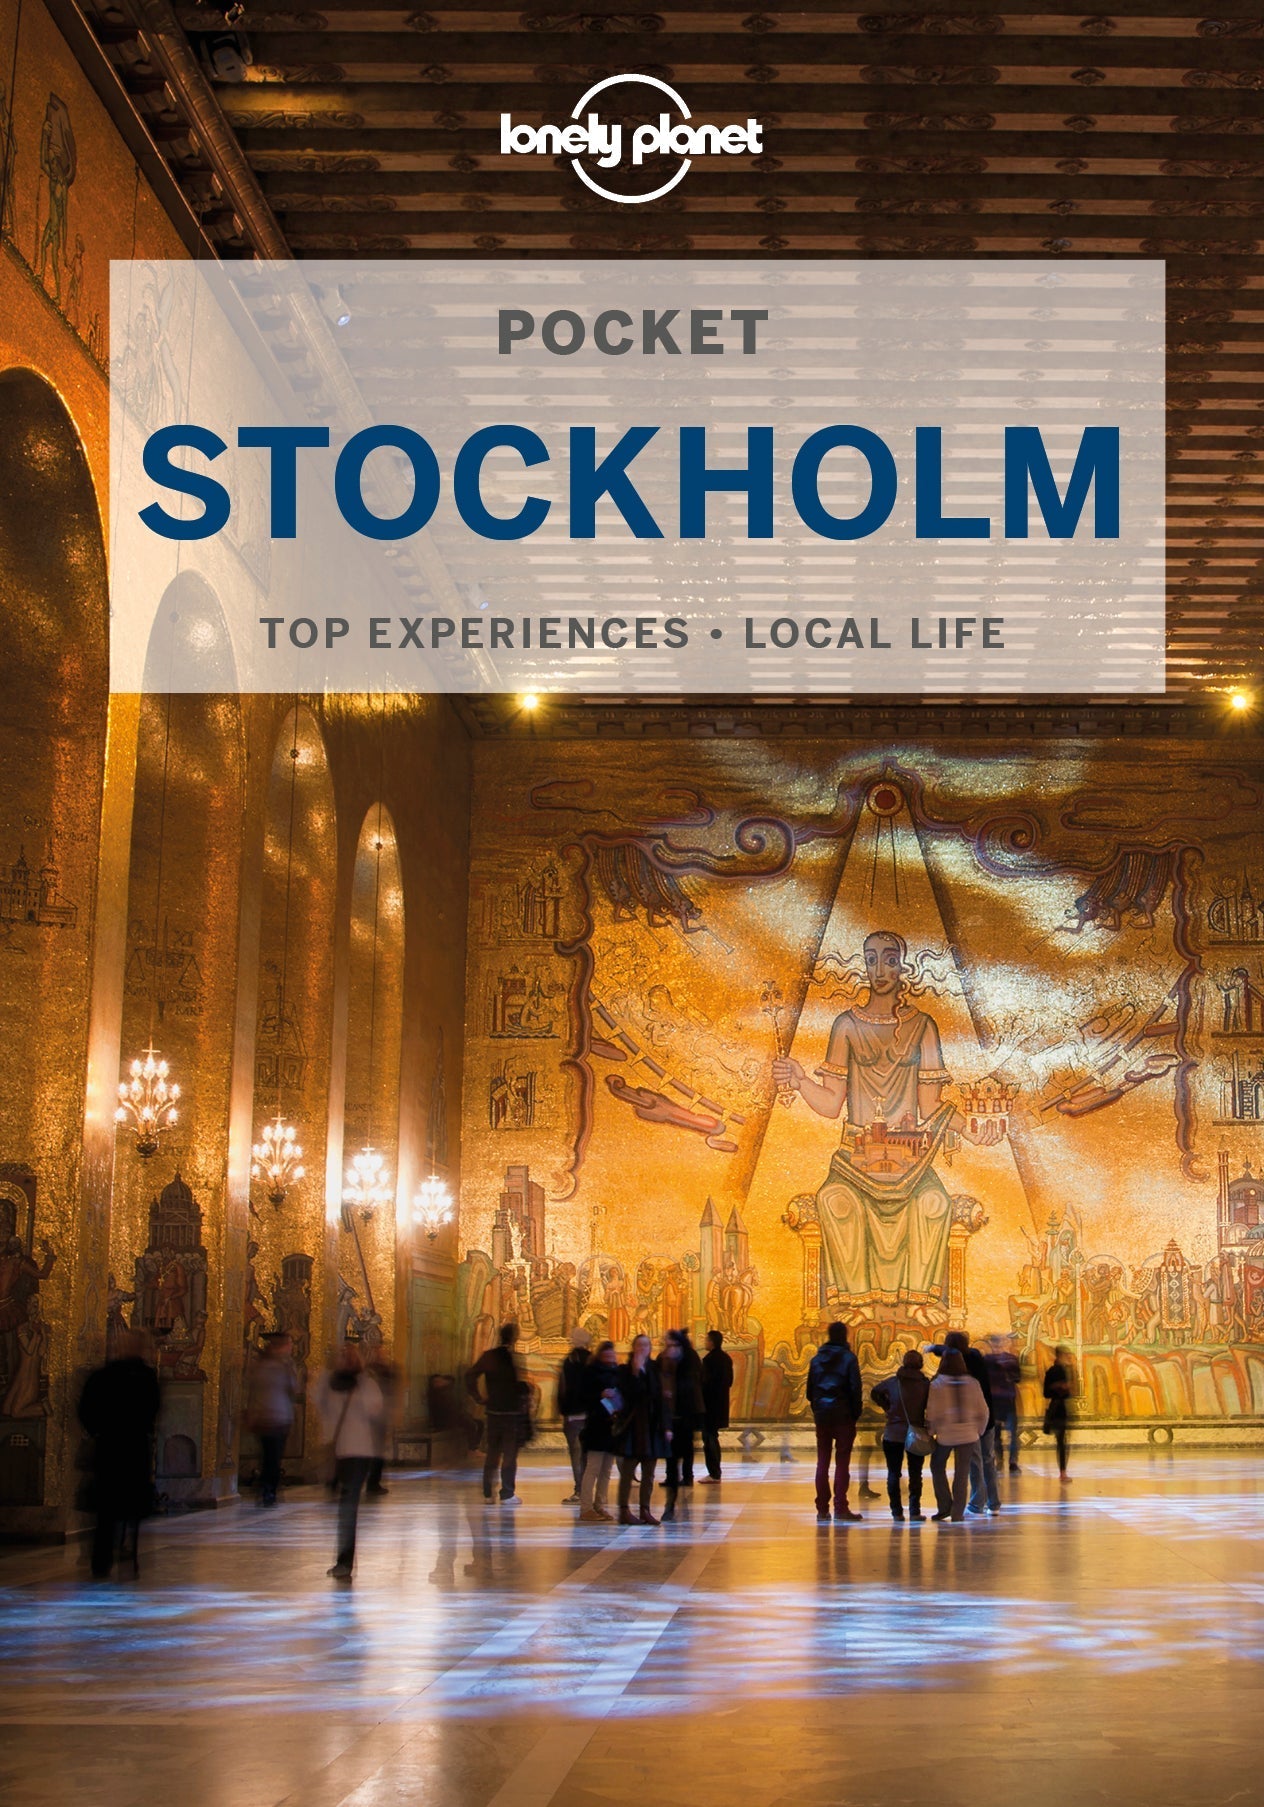 Pocket Stockholm Travel Book and Ebook